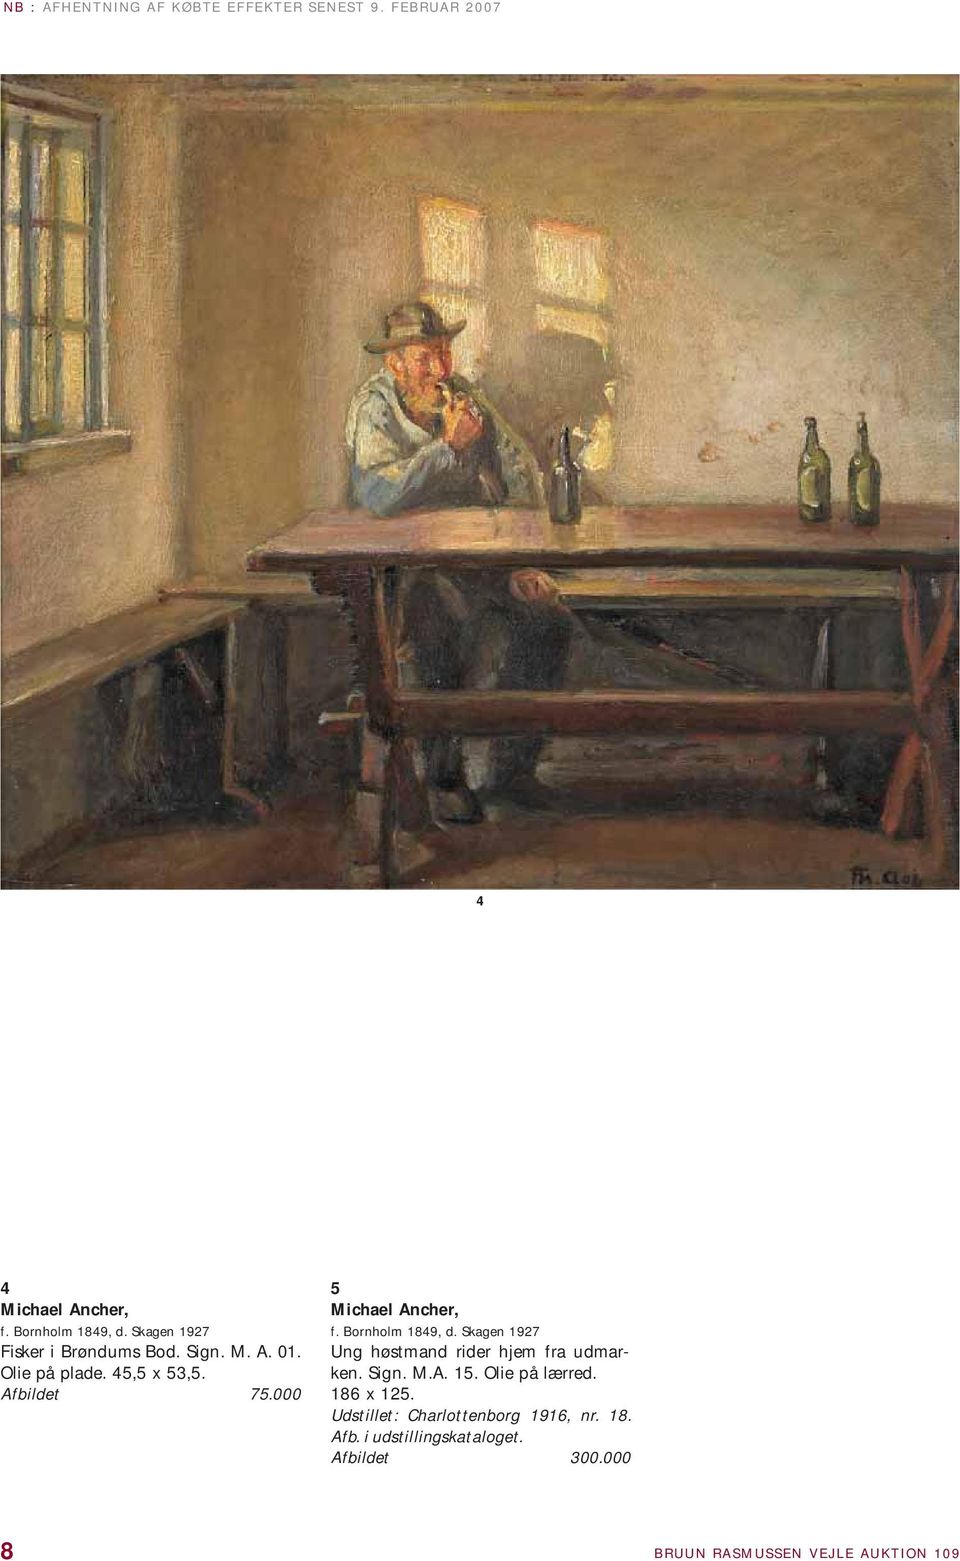 000 5 Michael Ancher, f. Bornholm 1849, d. Skagen 1927 Ung høstmand rider hjem fra udmarken. Sign. M.A. 15.